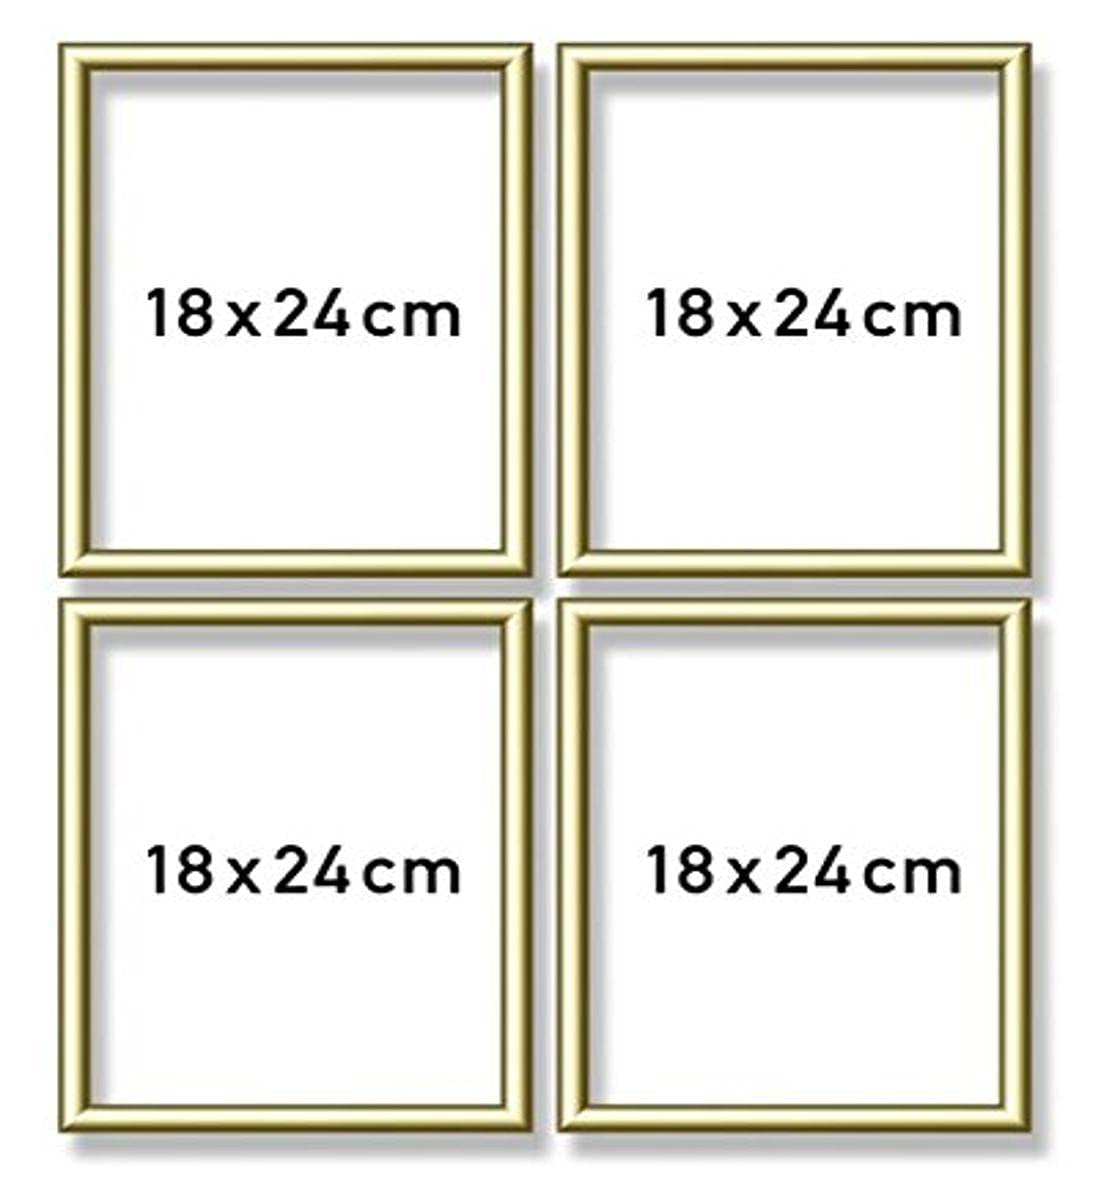 Schipper 605170704 Malen nach Zahlen, Alurahmen Quattro je 18 x 24 cm, goldglänzend ohne Glas für Ihr Kunstwerk, einfache Selbstmontage